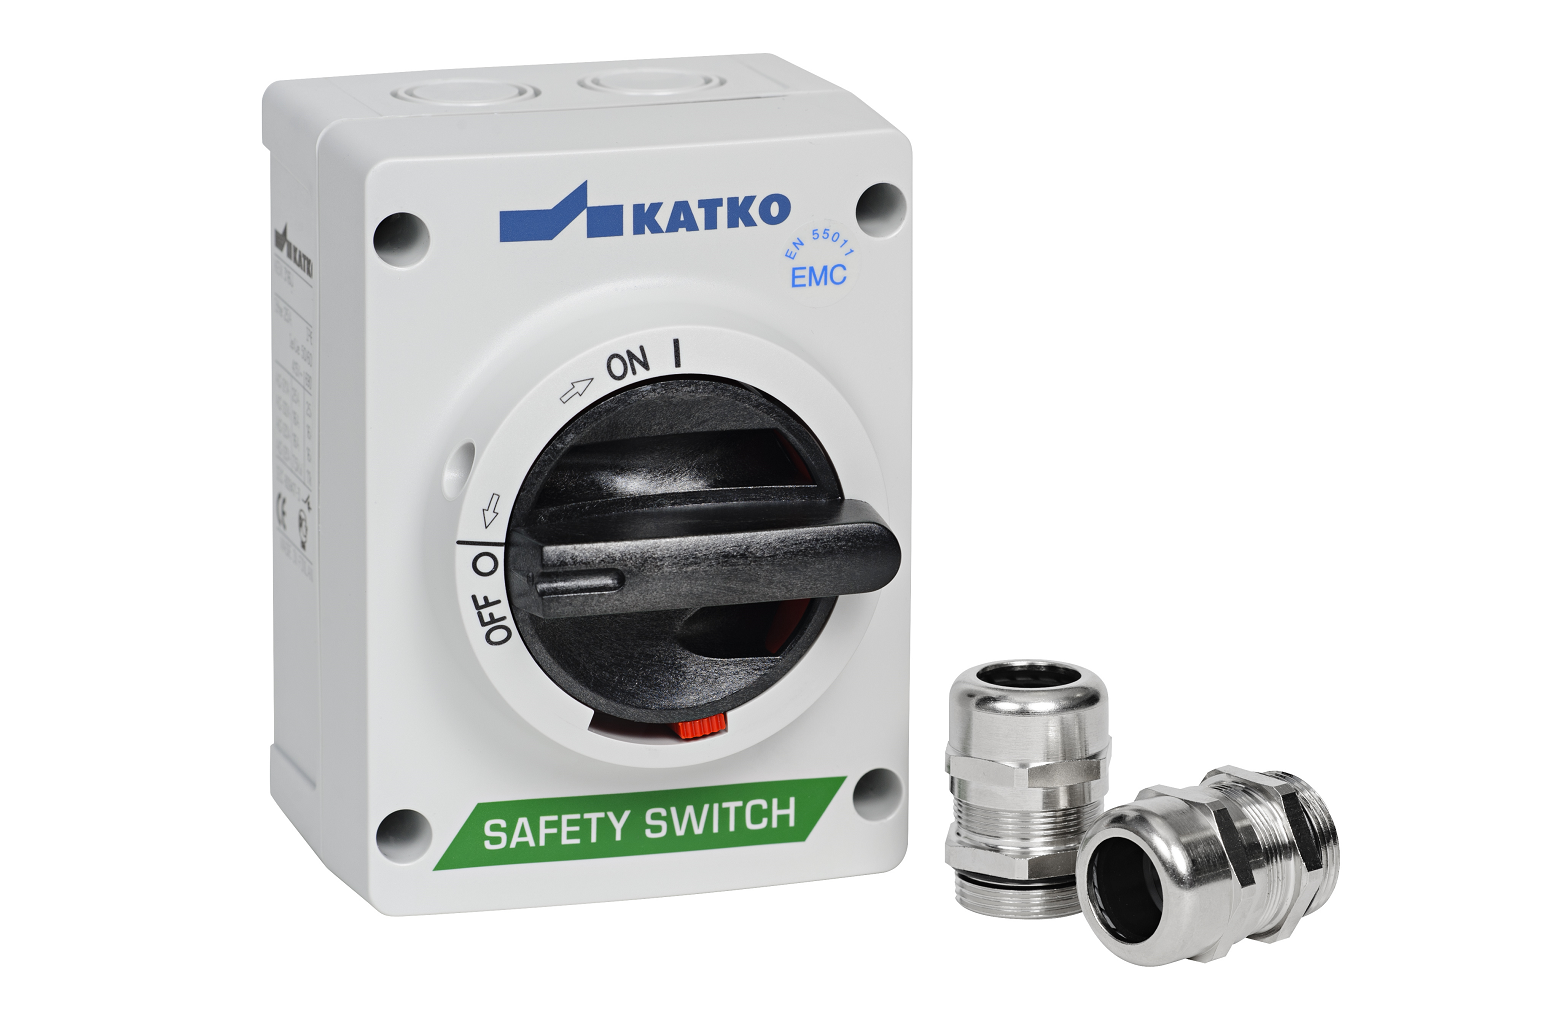 KATKO KEM EMC Protected Enclosed Safety Switches / Isolators 16-630A